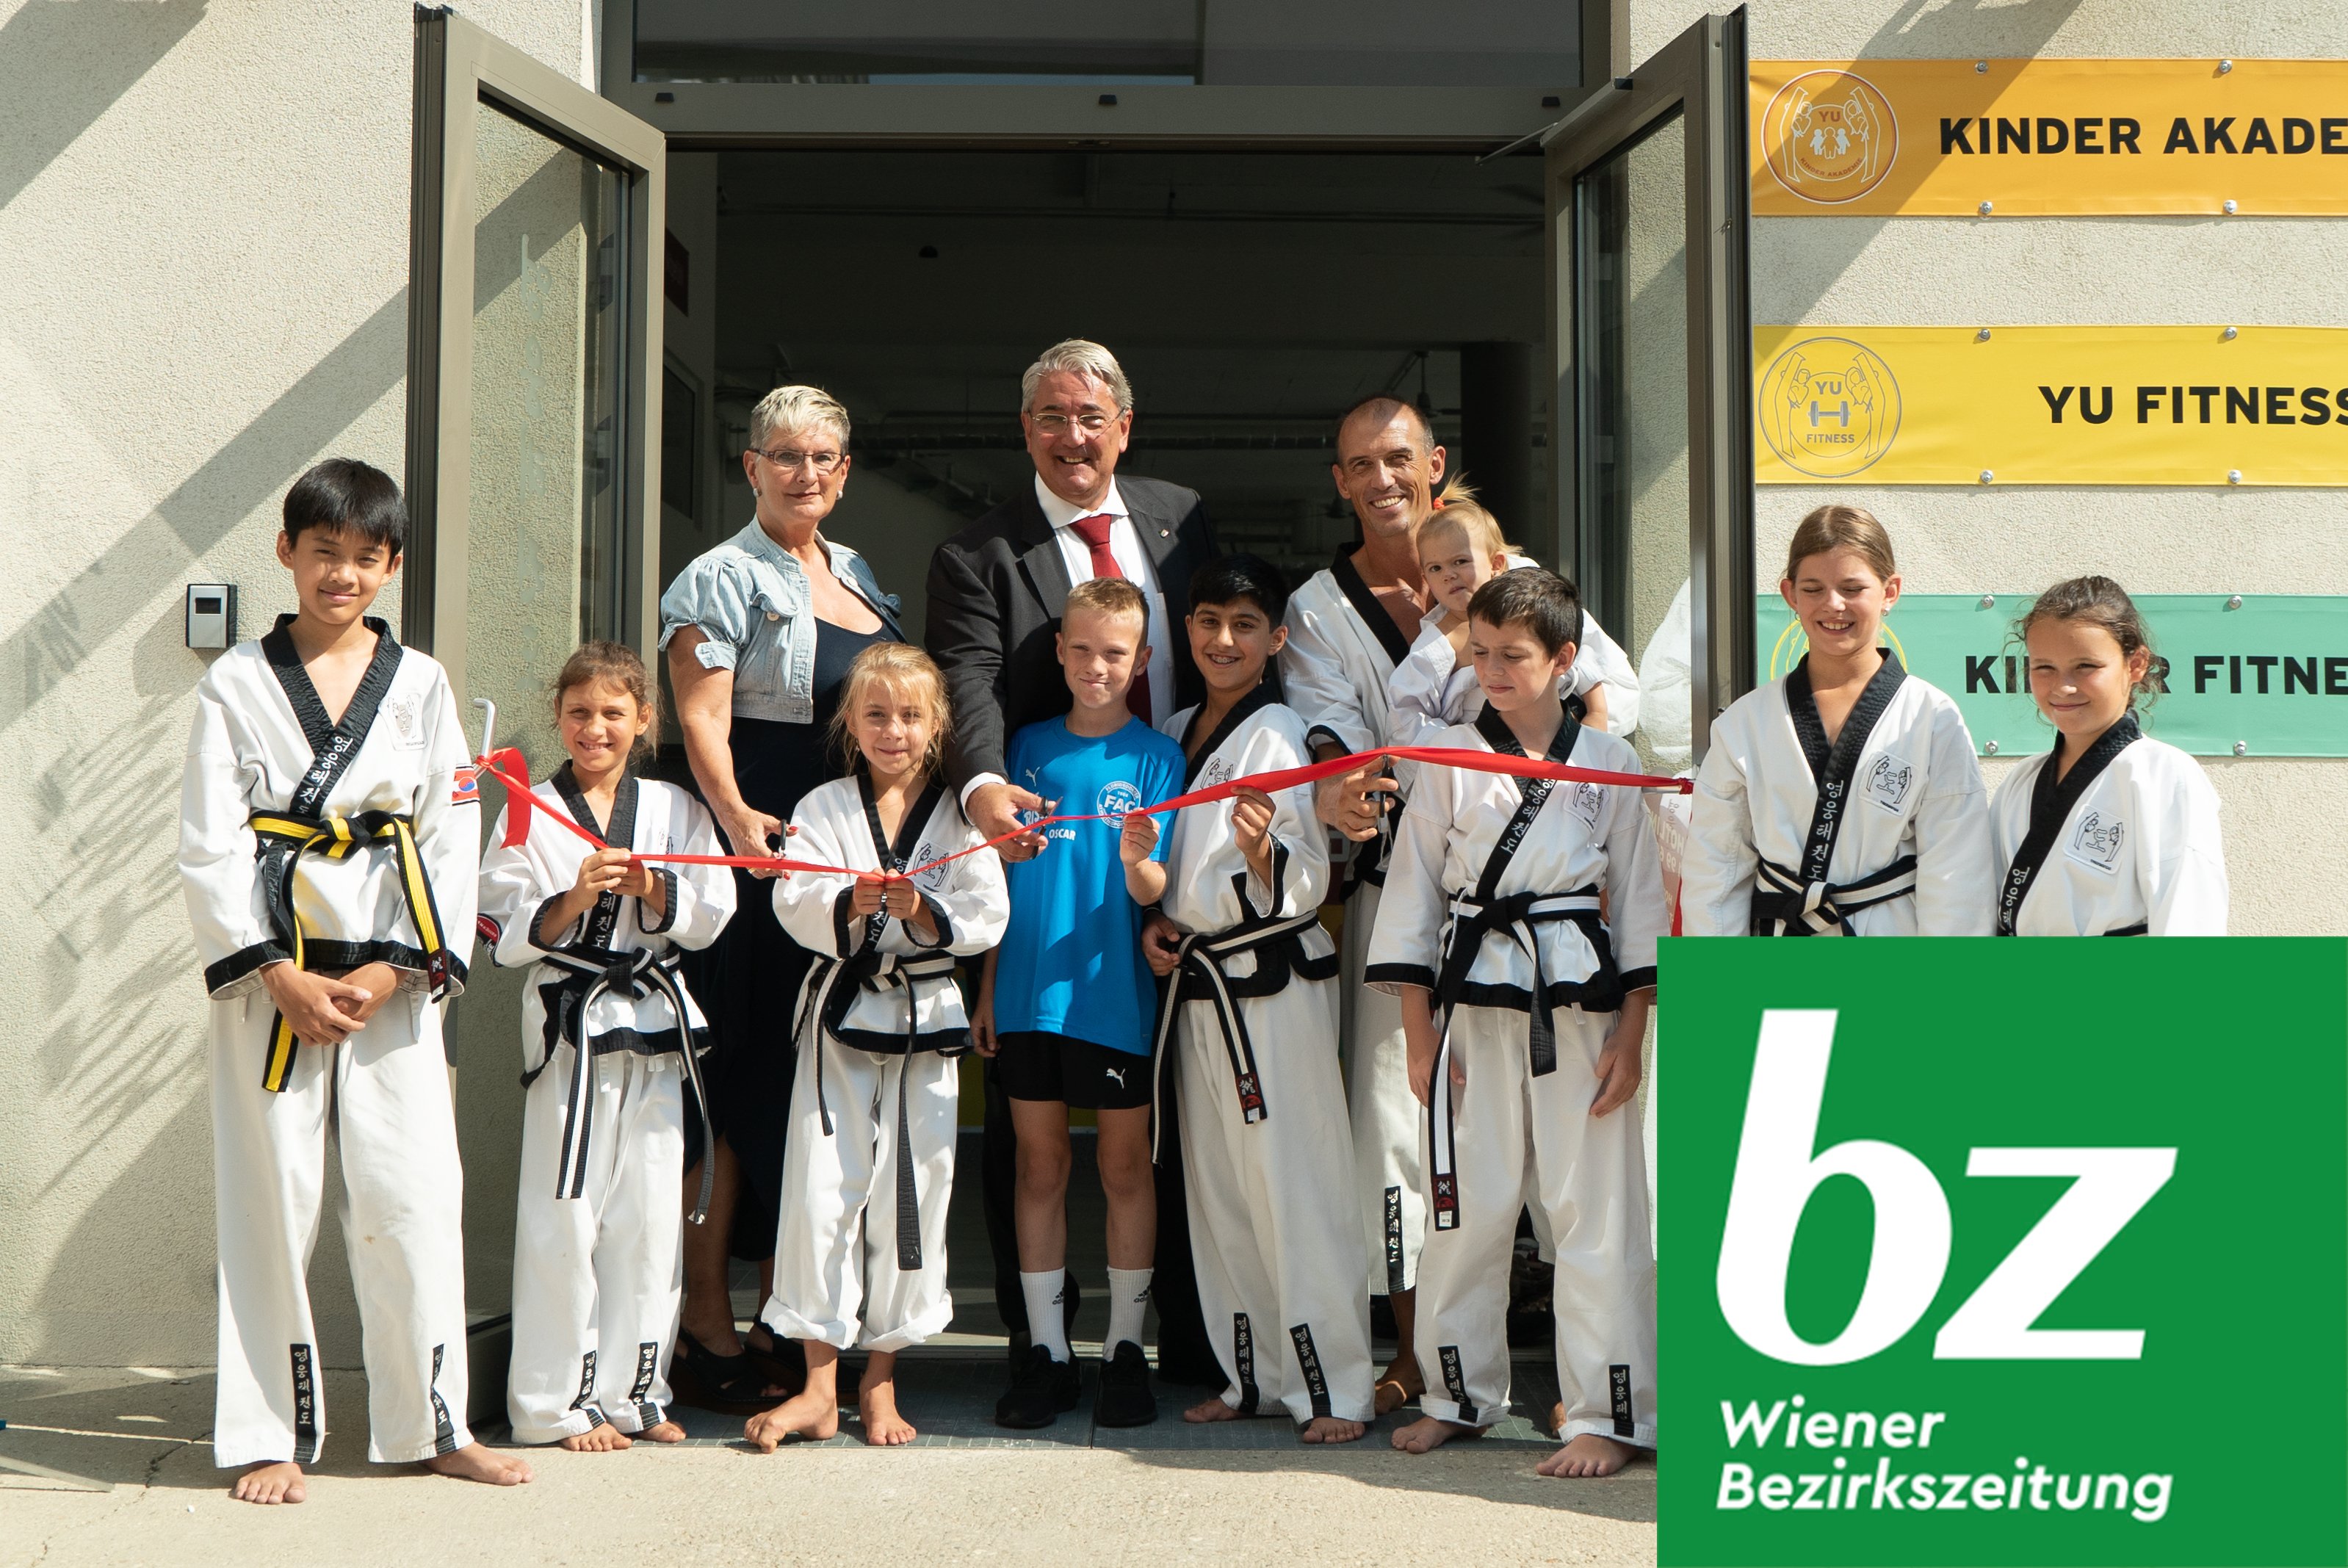 YOUNG-UNG Taekwondo BIG YU Wiener Bezirkszeitung